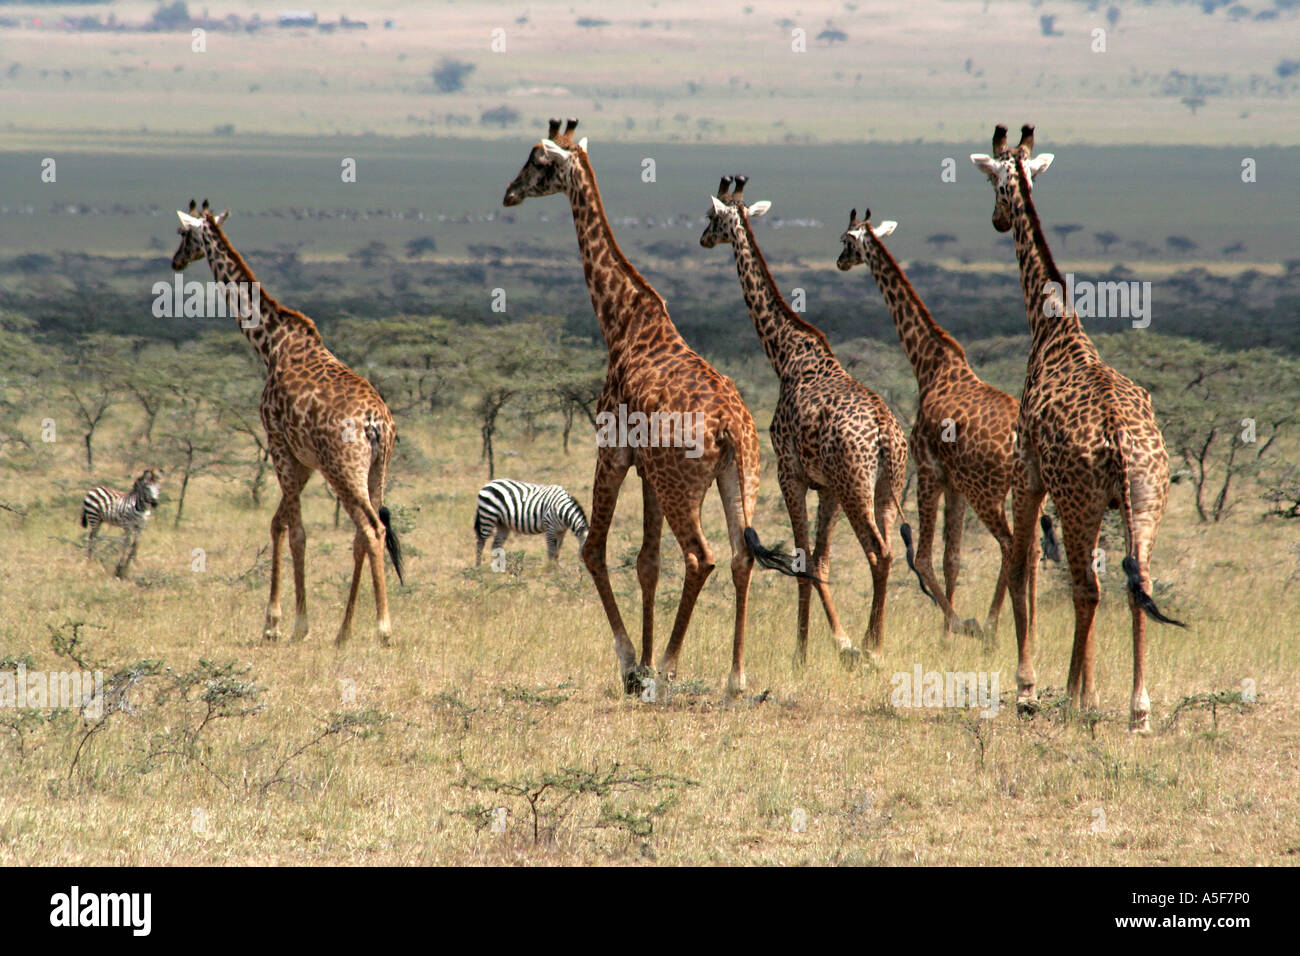 Giraffe, african Masai Giraffe, Masai Mara, Kenya, running herd Stock Photo